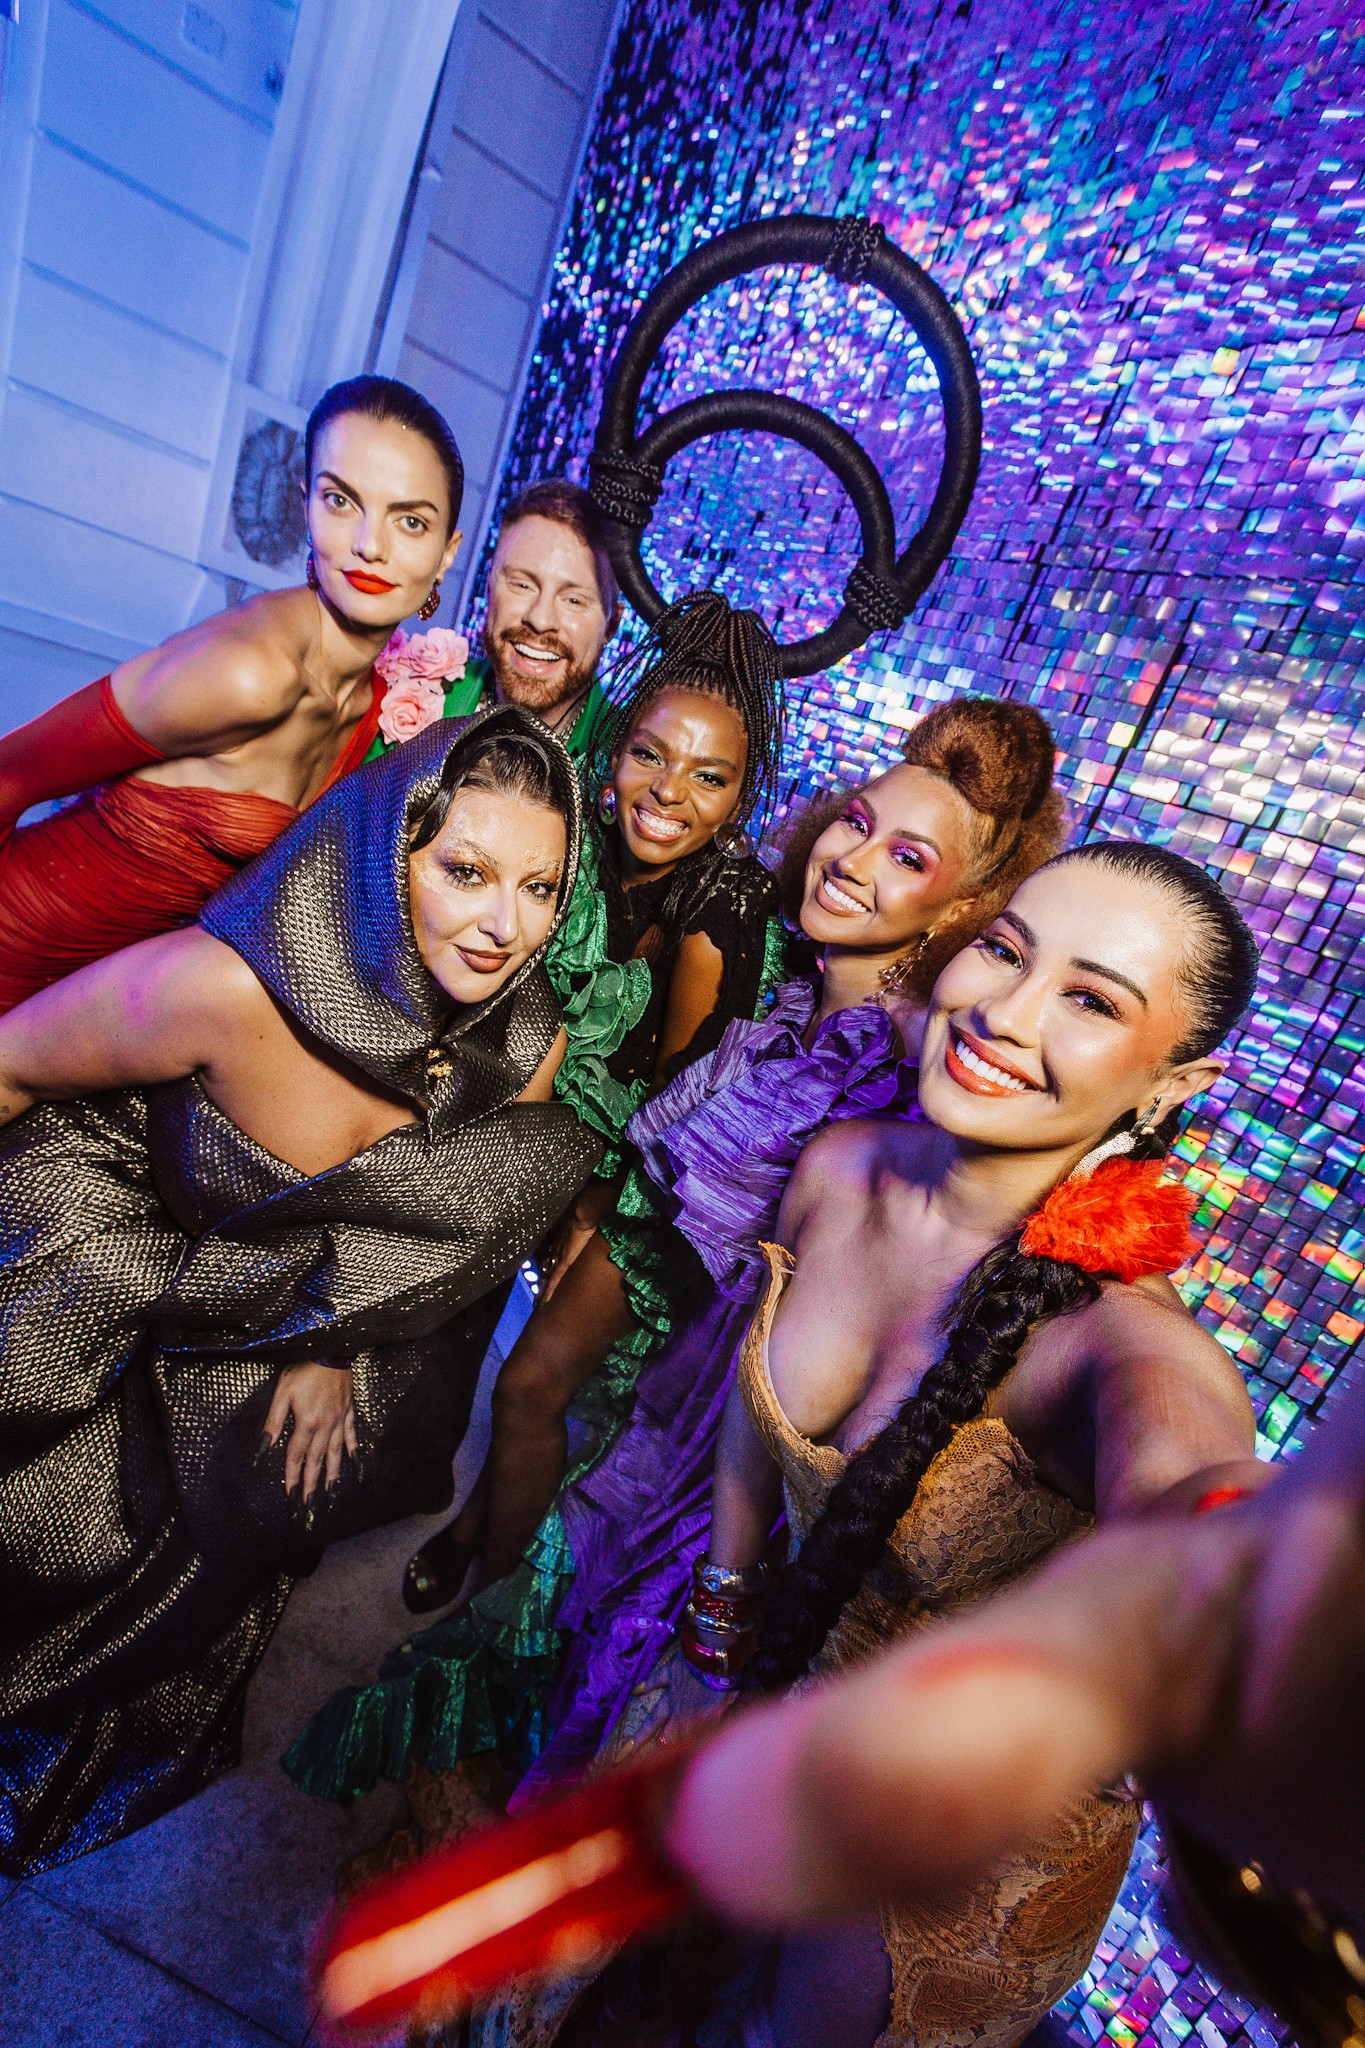 Barbara Fialho, Leonardo Coloral, Yasmim Stevam, Letticia Munniz, Lore Souza e Thaynara OG representaram a Neutrogena nesta edição do Baile da Vogue